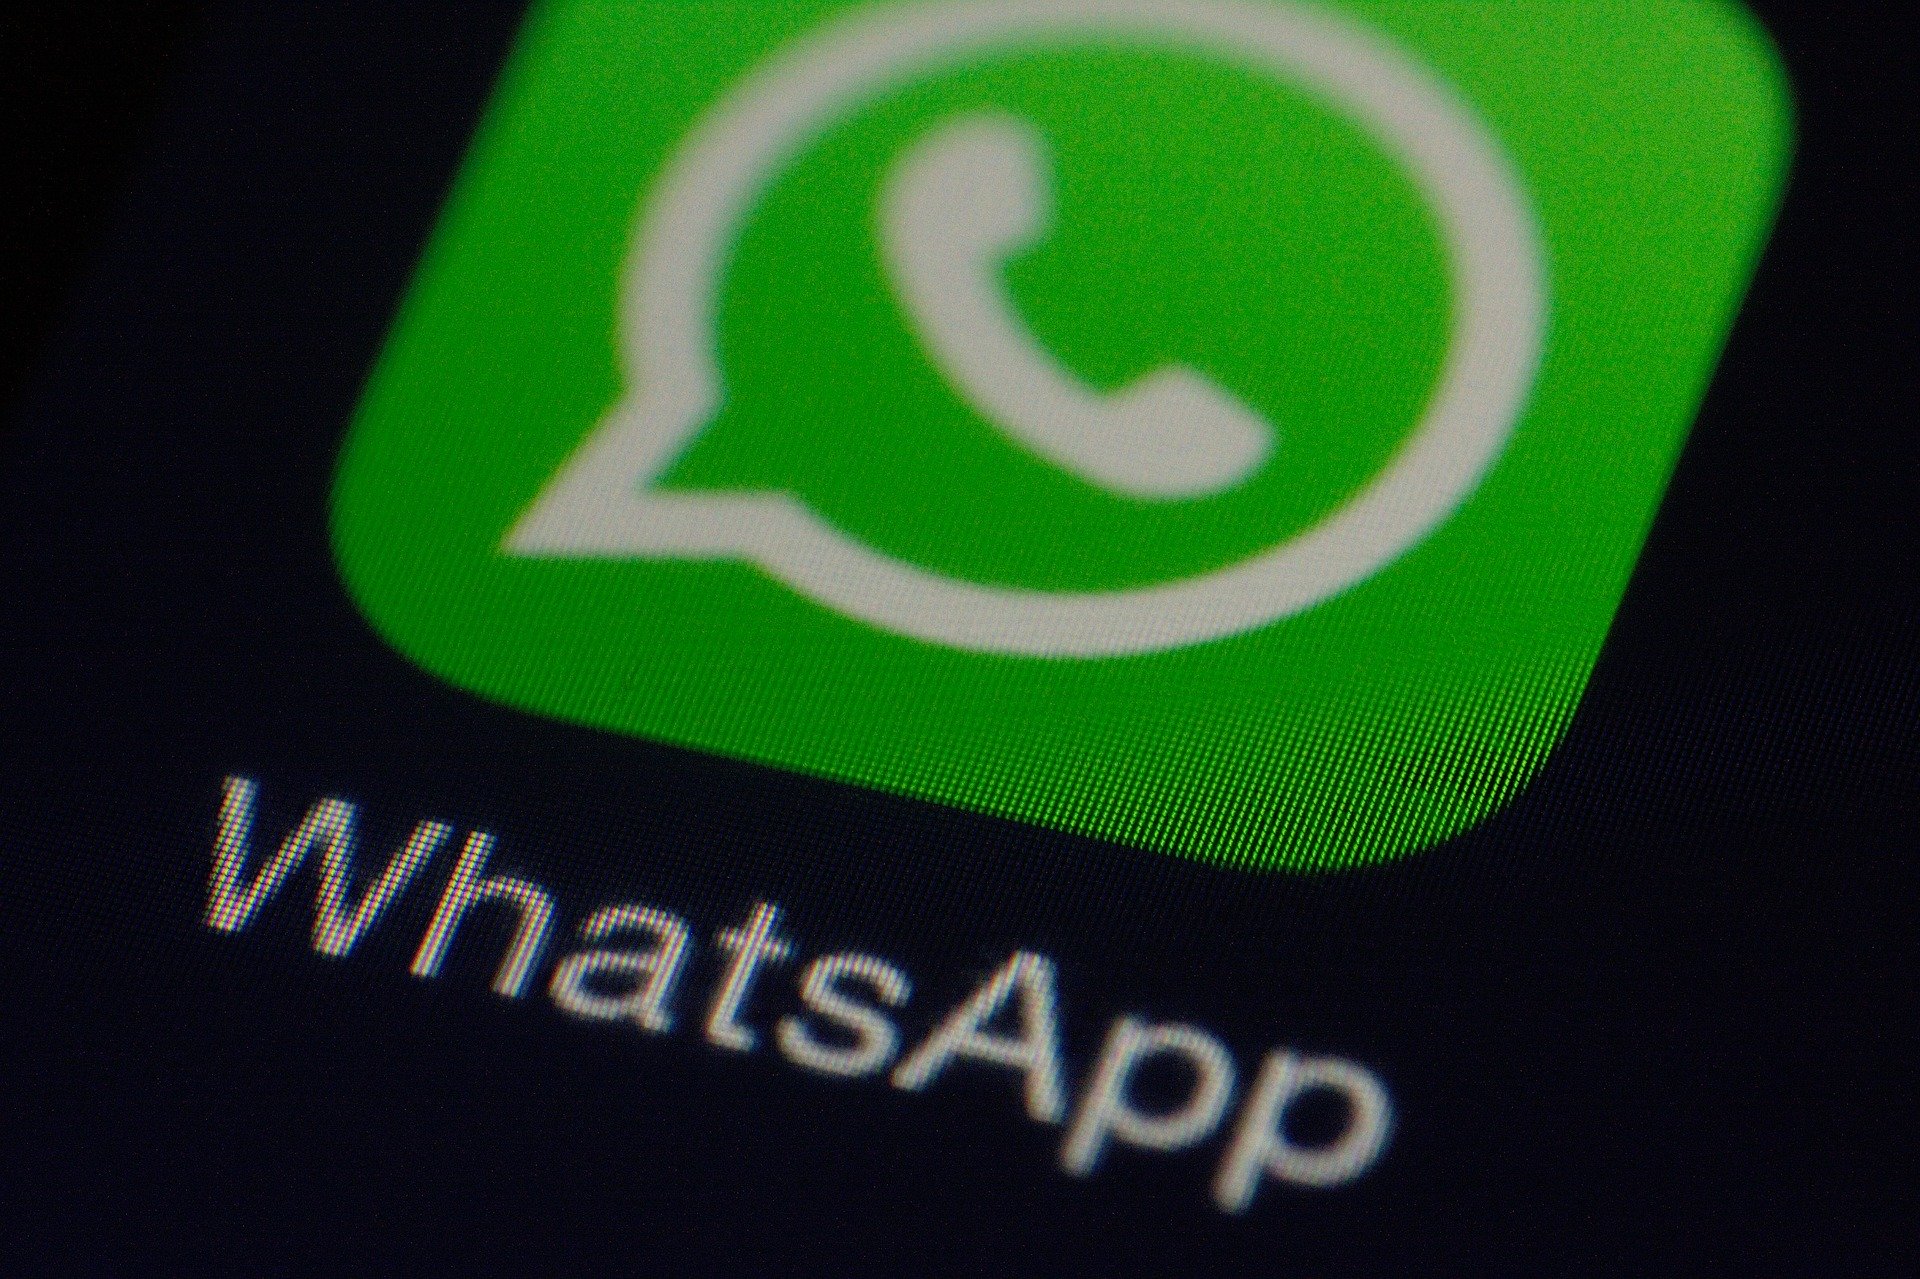 WhatsApp es una de las aplicaciones de mensajería más utilizada en el mundo. (Foto Prensa Libre: Pixabay)